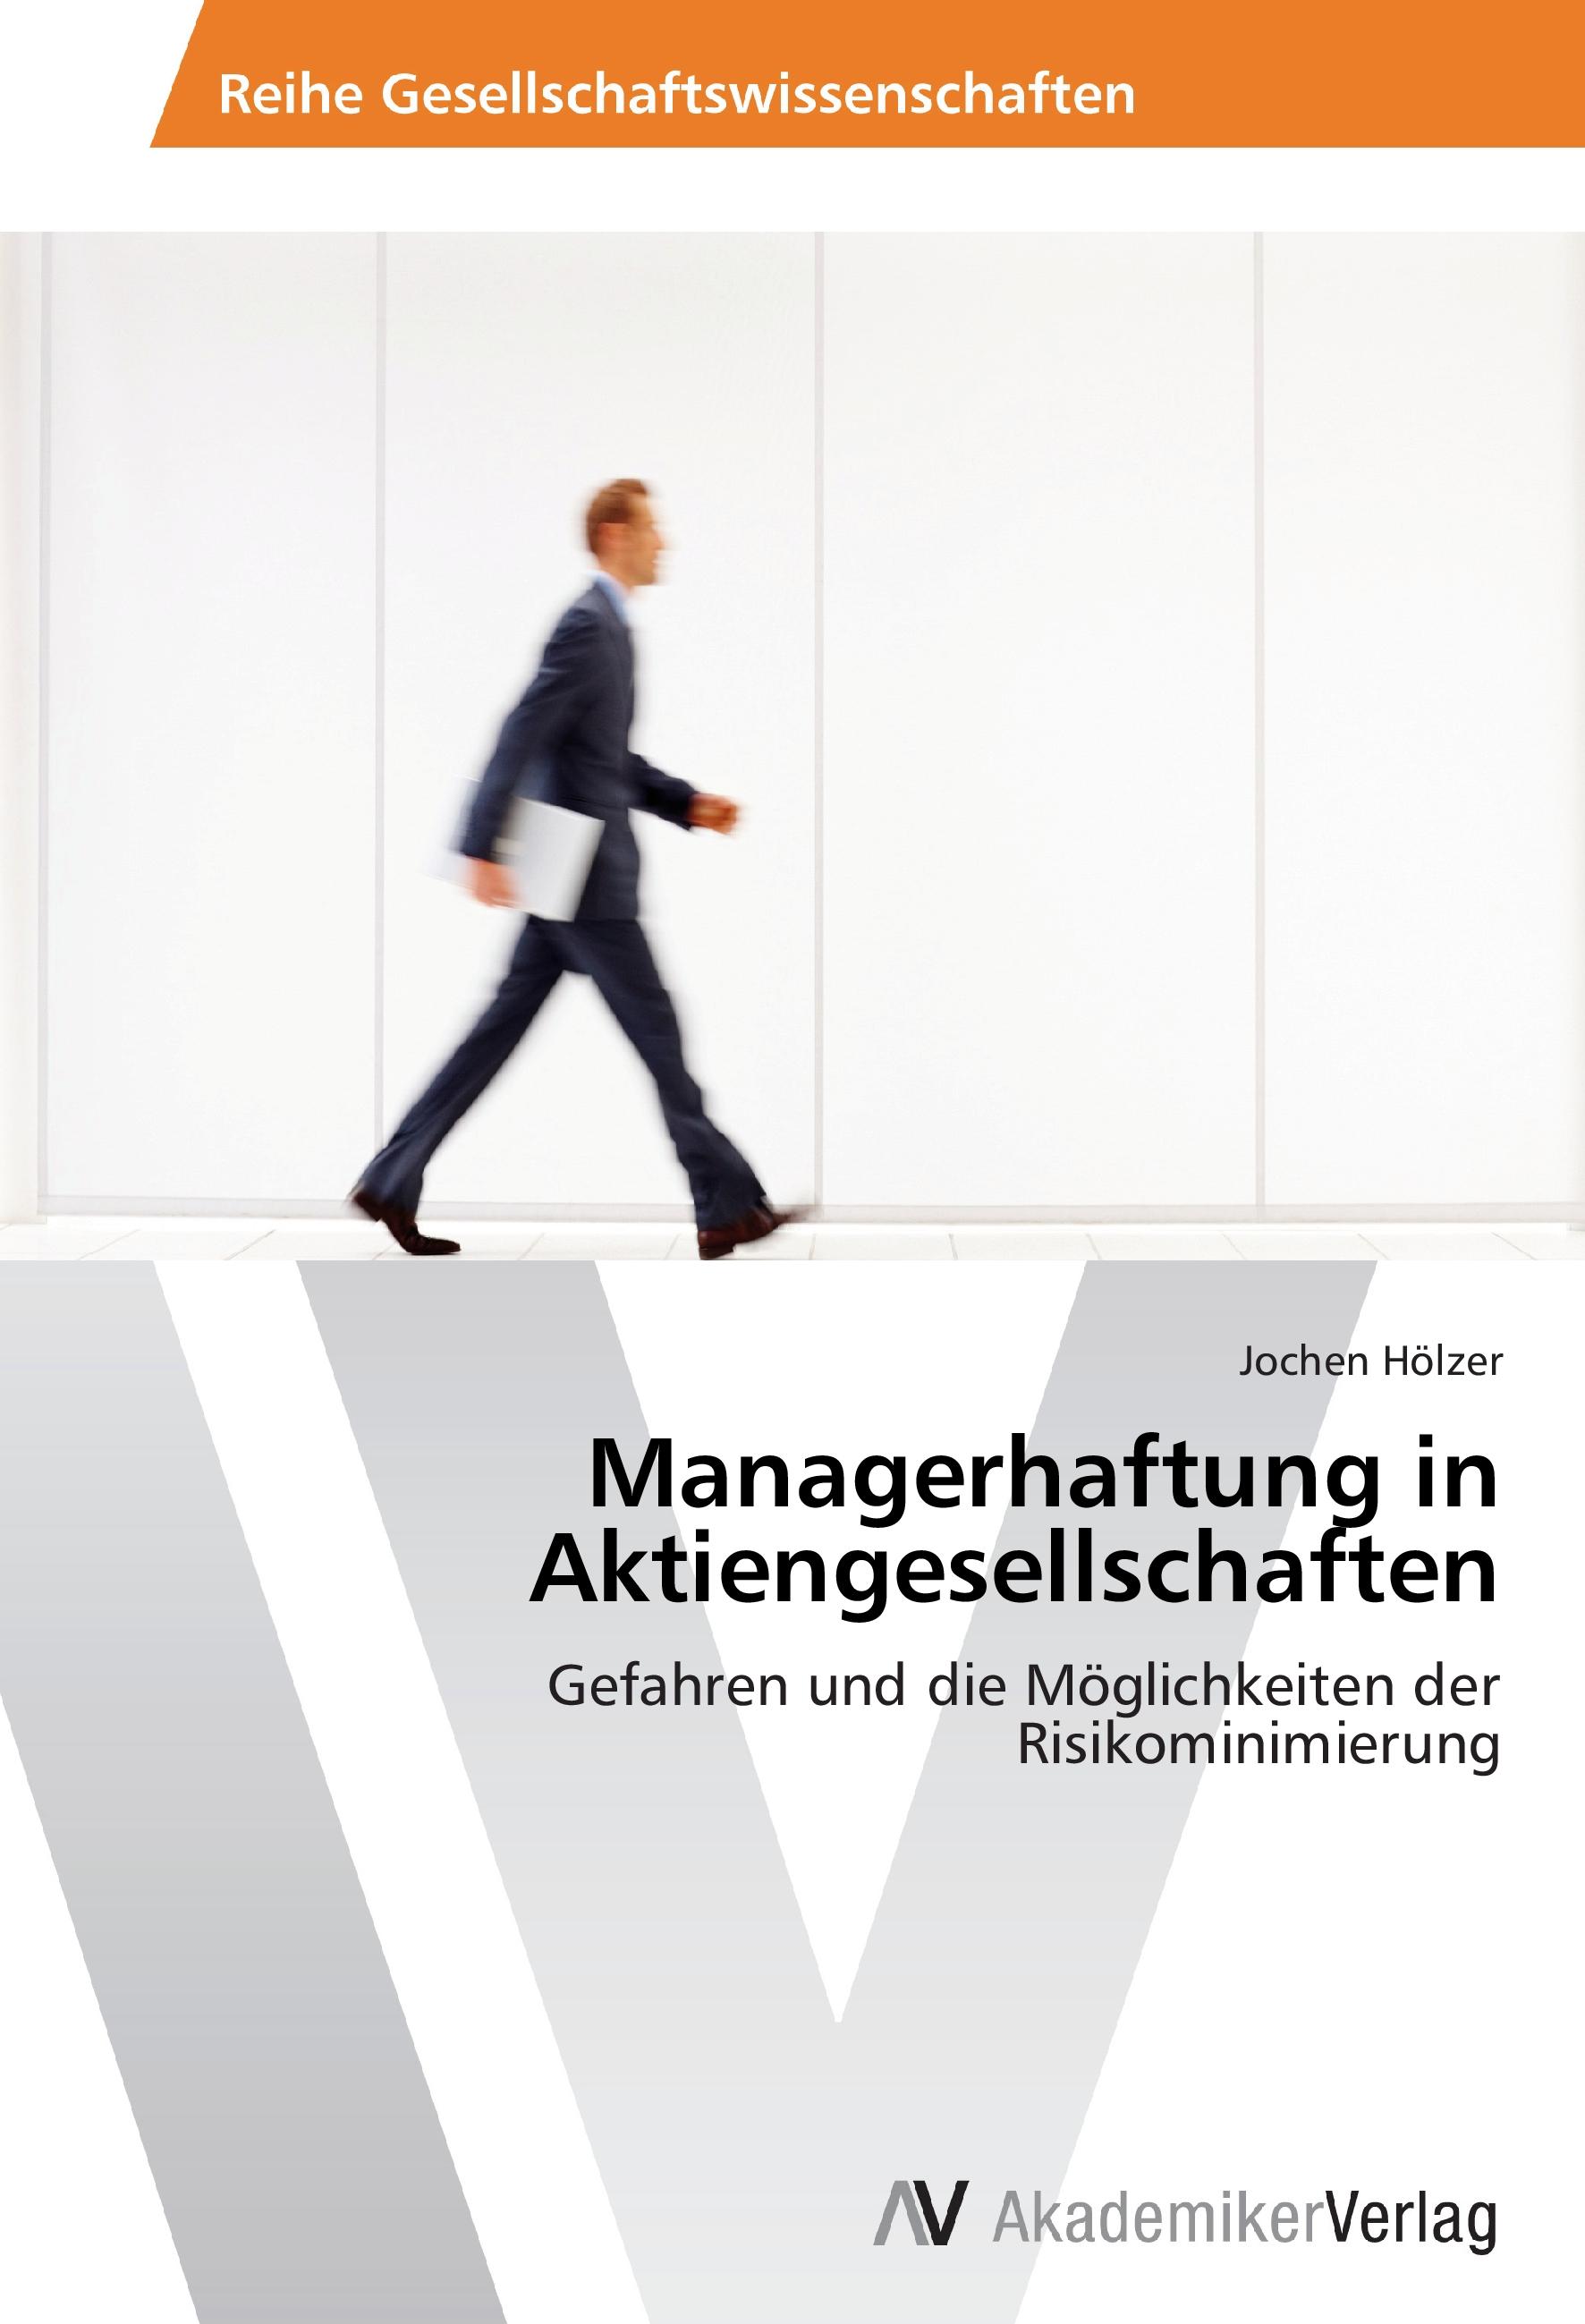 Managerhaftung in Aktiengesellschaften - Jochen Hoelzer